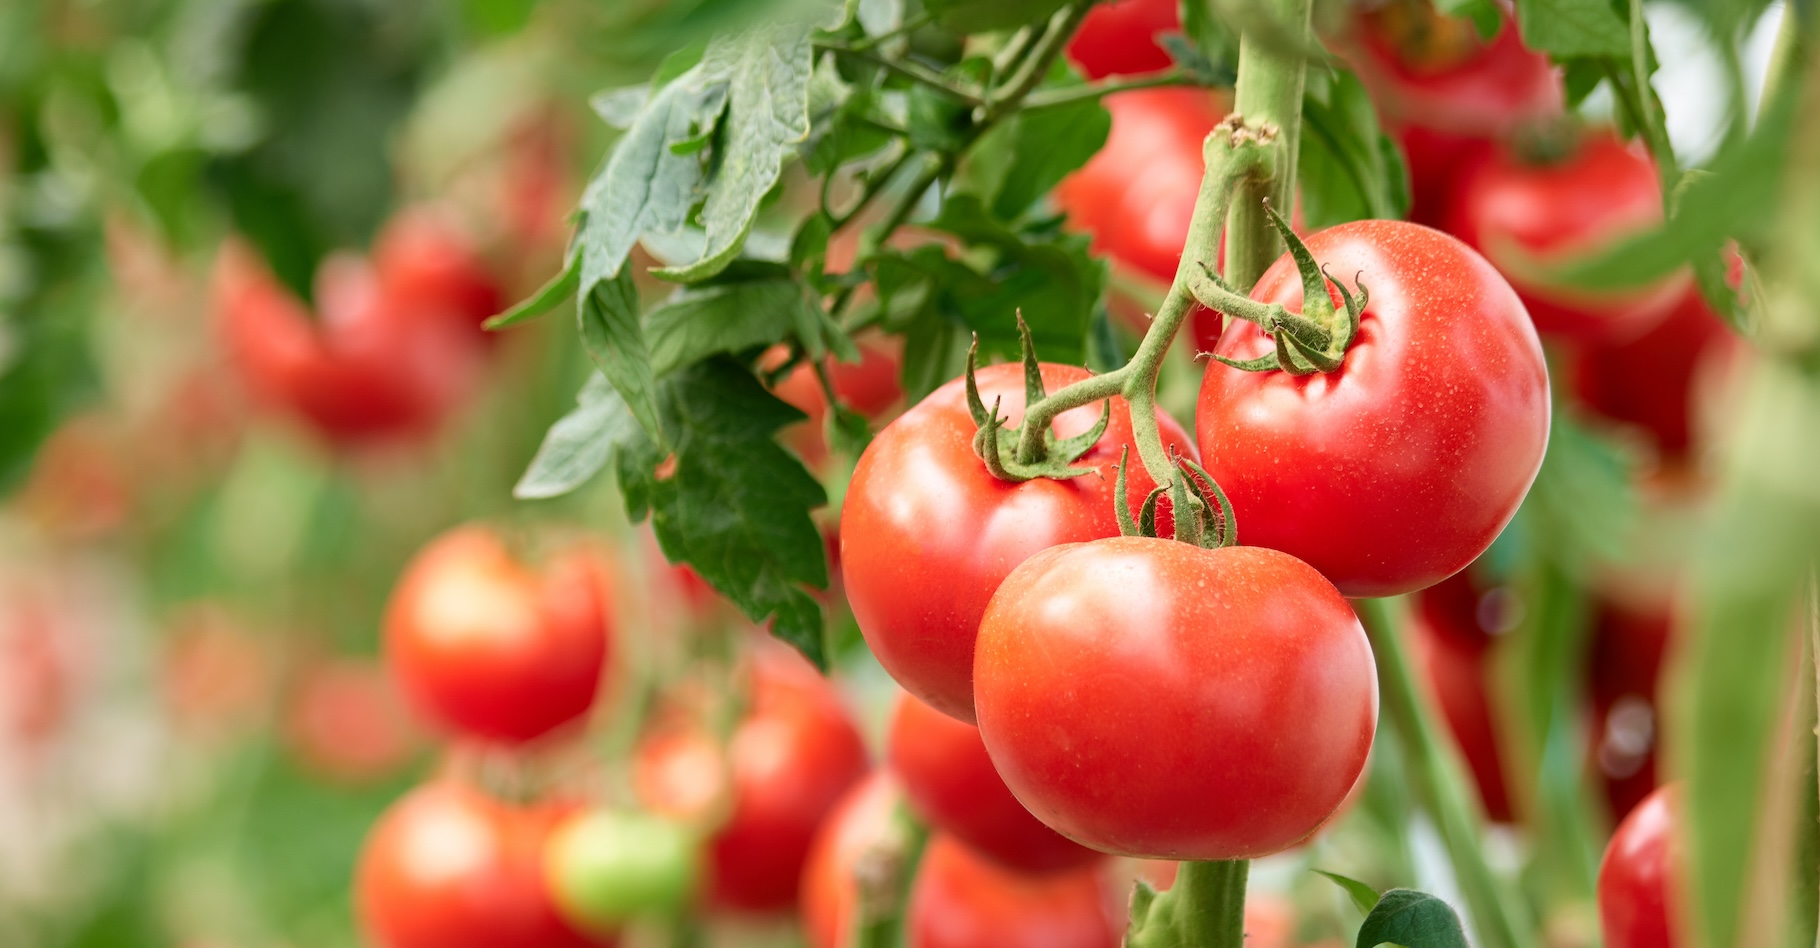 Des chercheurs de l’université de l’Illinois (États-Unis) ont observé des comportements étranges chez différents plants de tomates. Ils semblent peiner à distinguer amis et ennemis. © DenisProduction.com, Adobe Stock